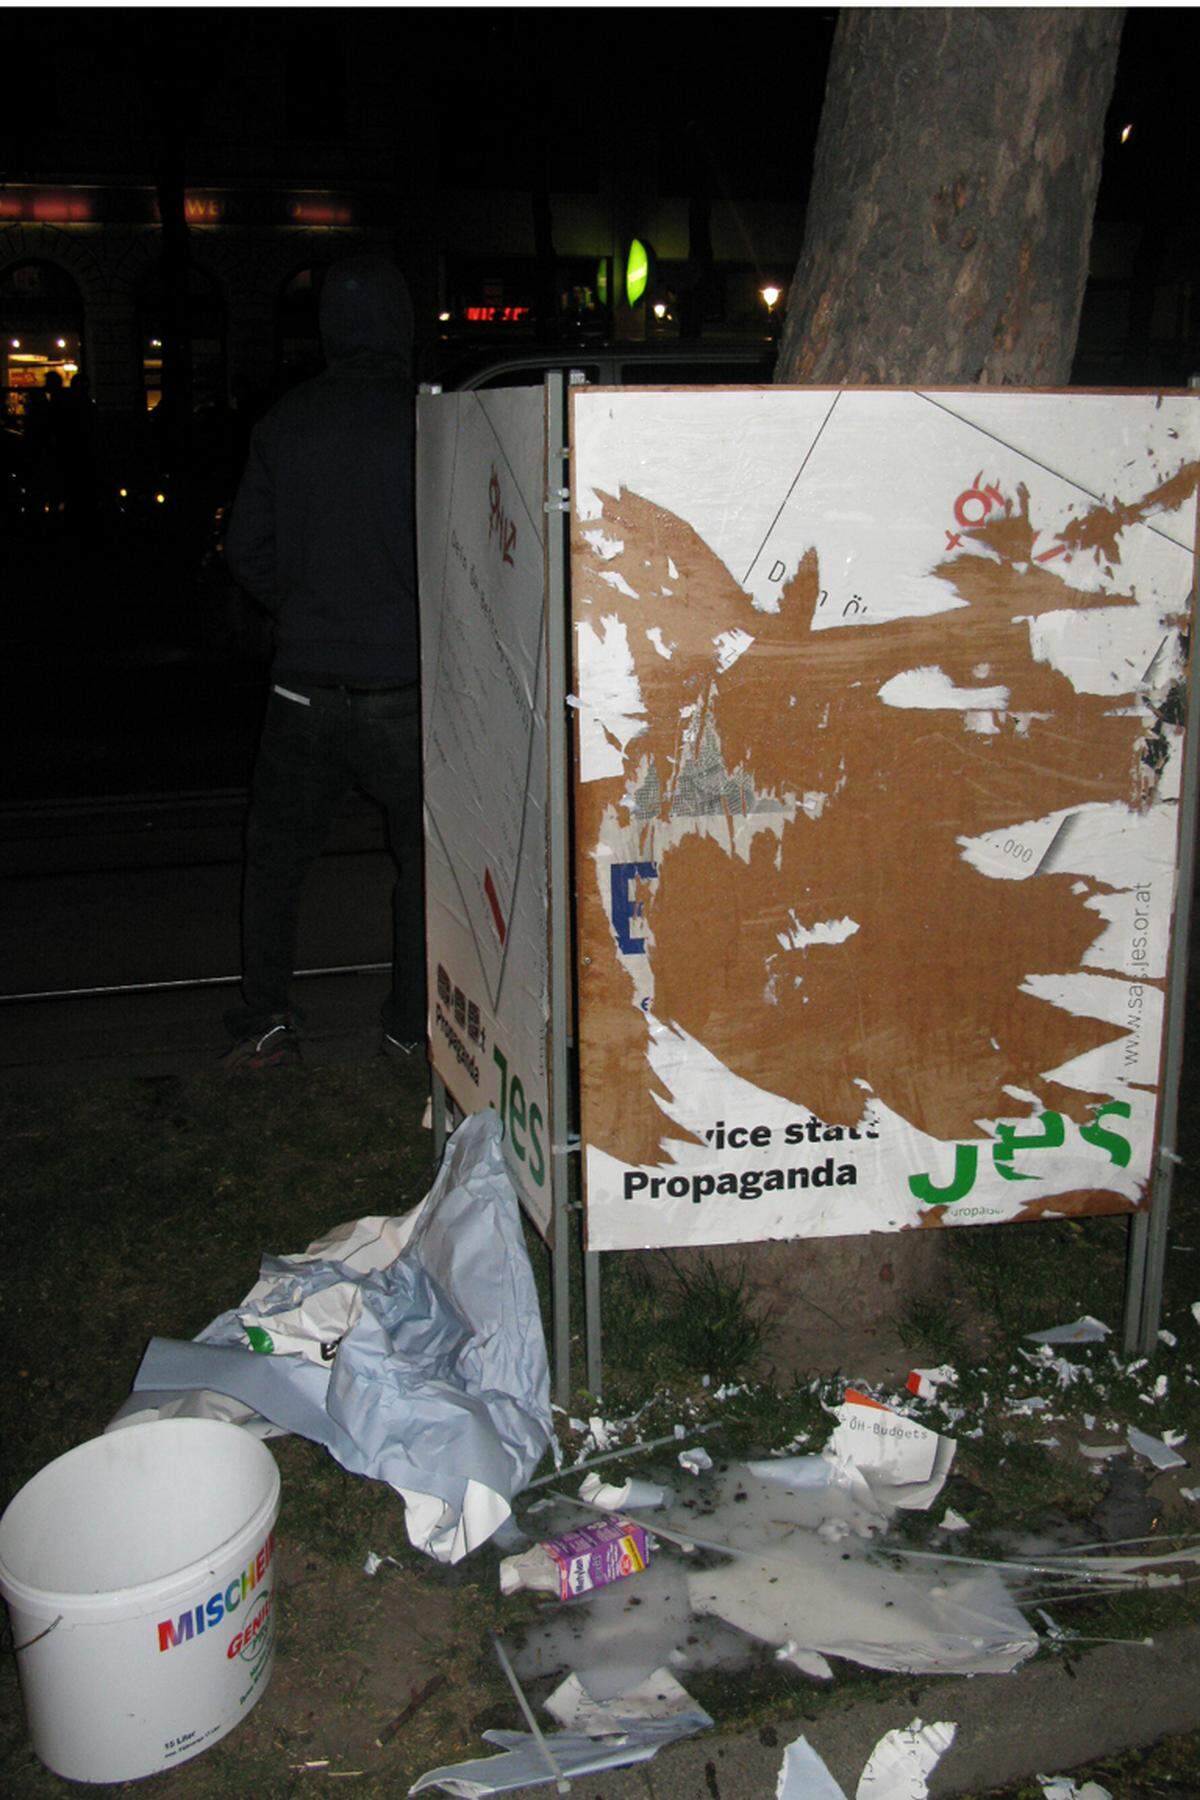 Die Junge Europäische Studenteninitiative plakatiert gegen 21:30 Uhr auf der Ringstraße Wahlwerbung. Plötzlich tauchen Demonstranten auf, "reißen die Plakate herunter und schmeißen die Kübel mit Leim um. Wir mussten die Polizei rufen", sagt ein Wahlkämpfer. Dann wieder Blaulicht. Nicht alle hatten sich an diesem Abend im Griff. Der großen Mehrheit ging es aber um ihr Anliegen - "nie wieder Nazis am Heldenplatz".